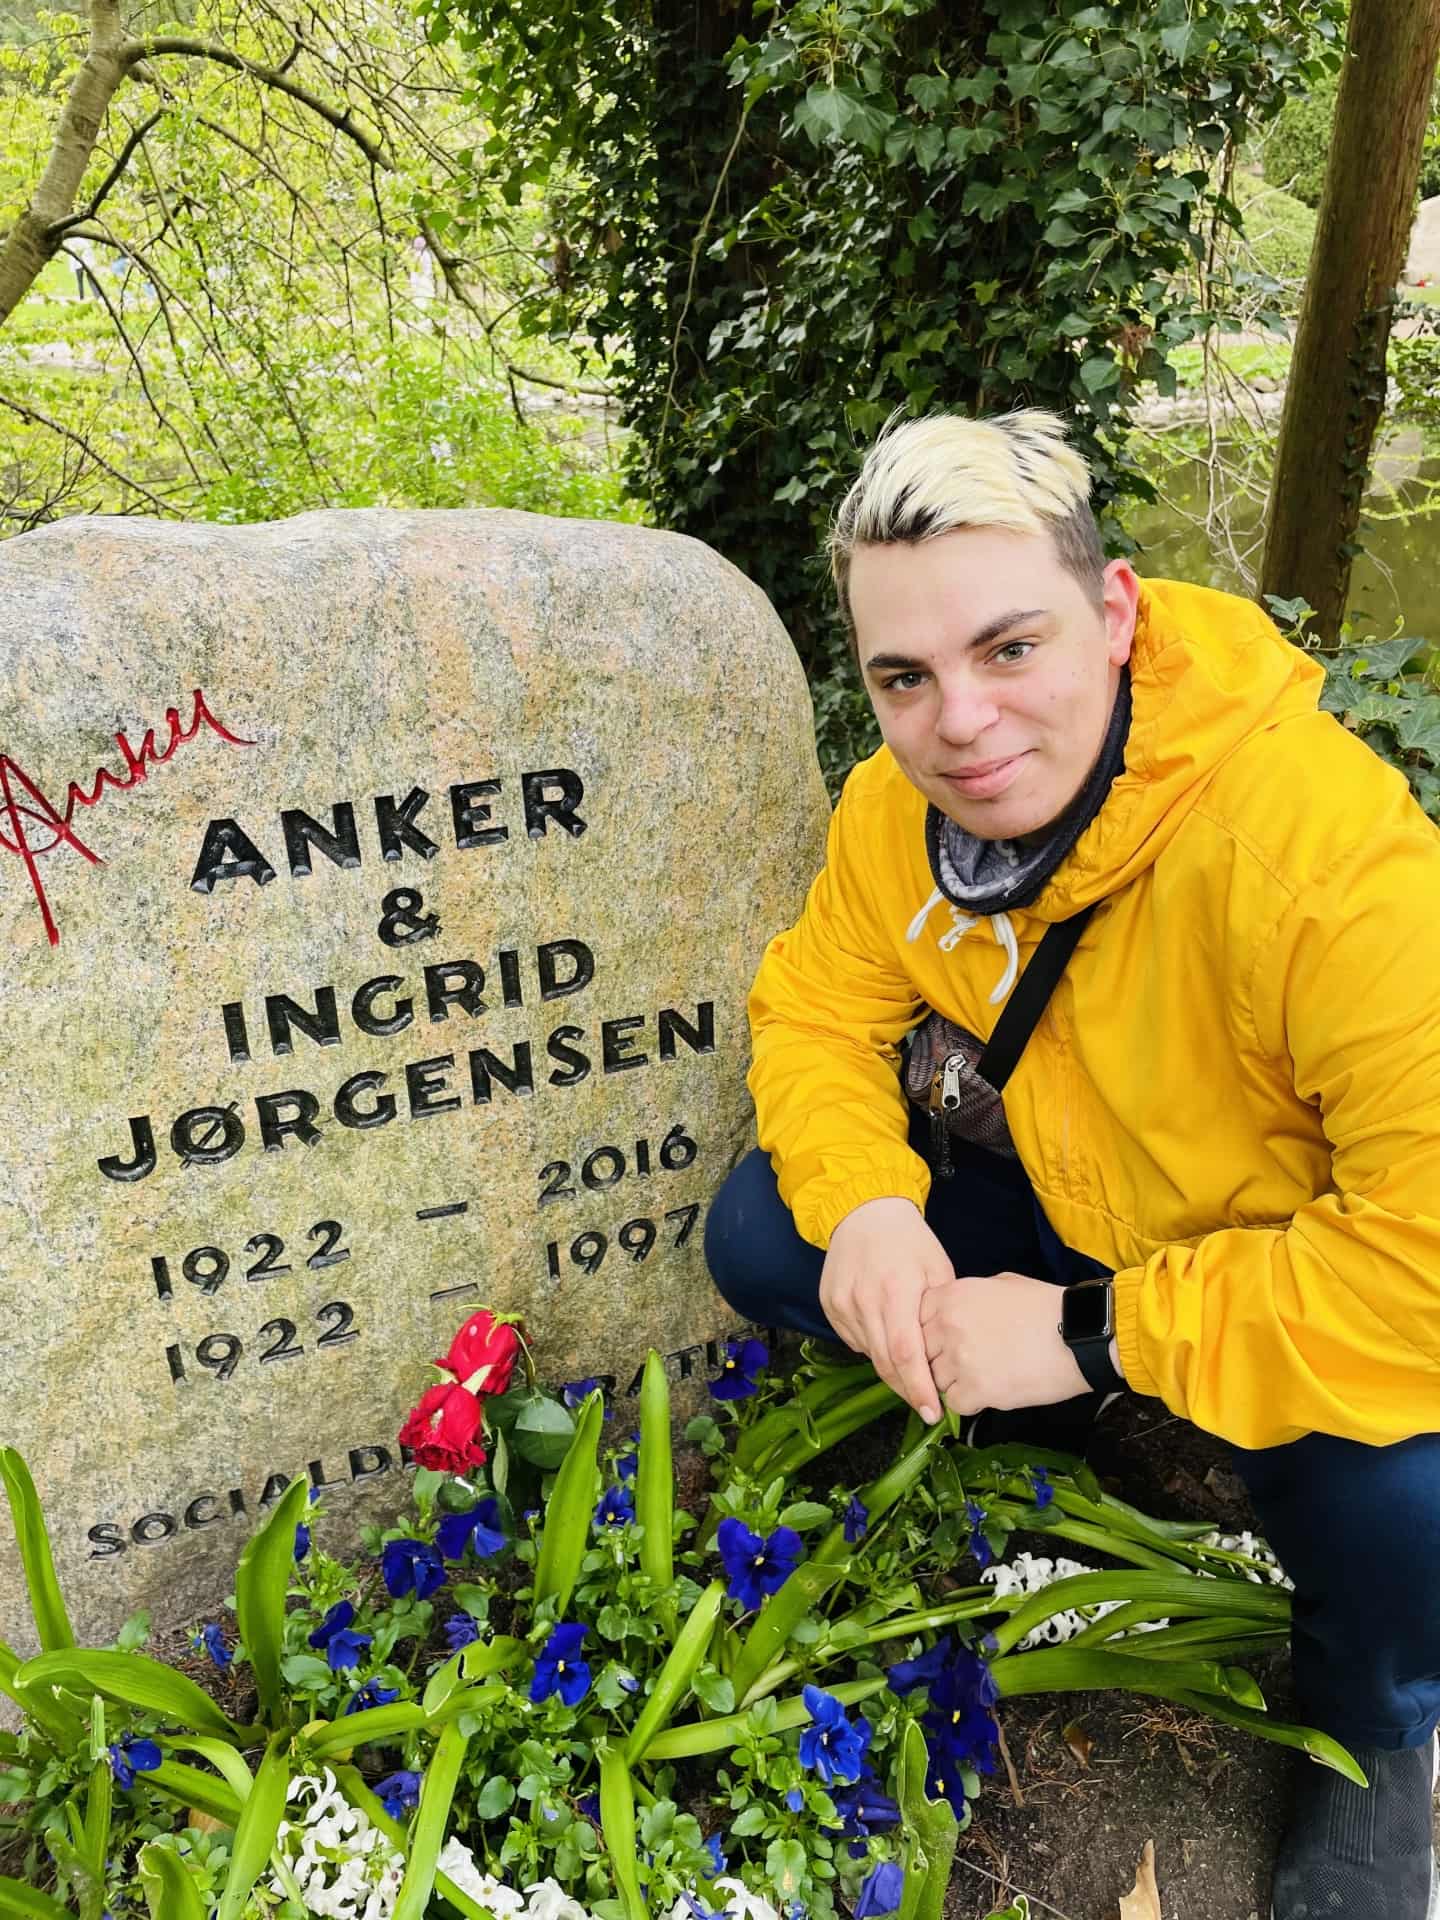 Anker Jørgensen med sin folkelige og åbenhjertige fremtræden